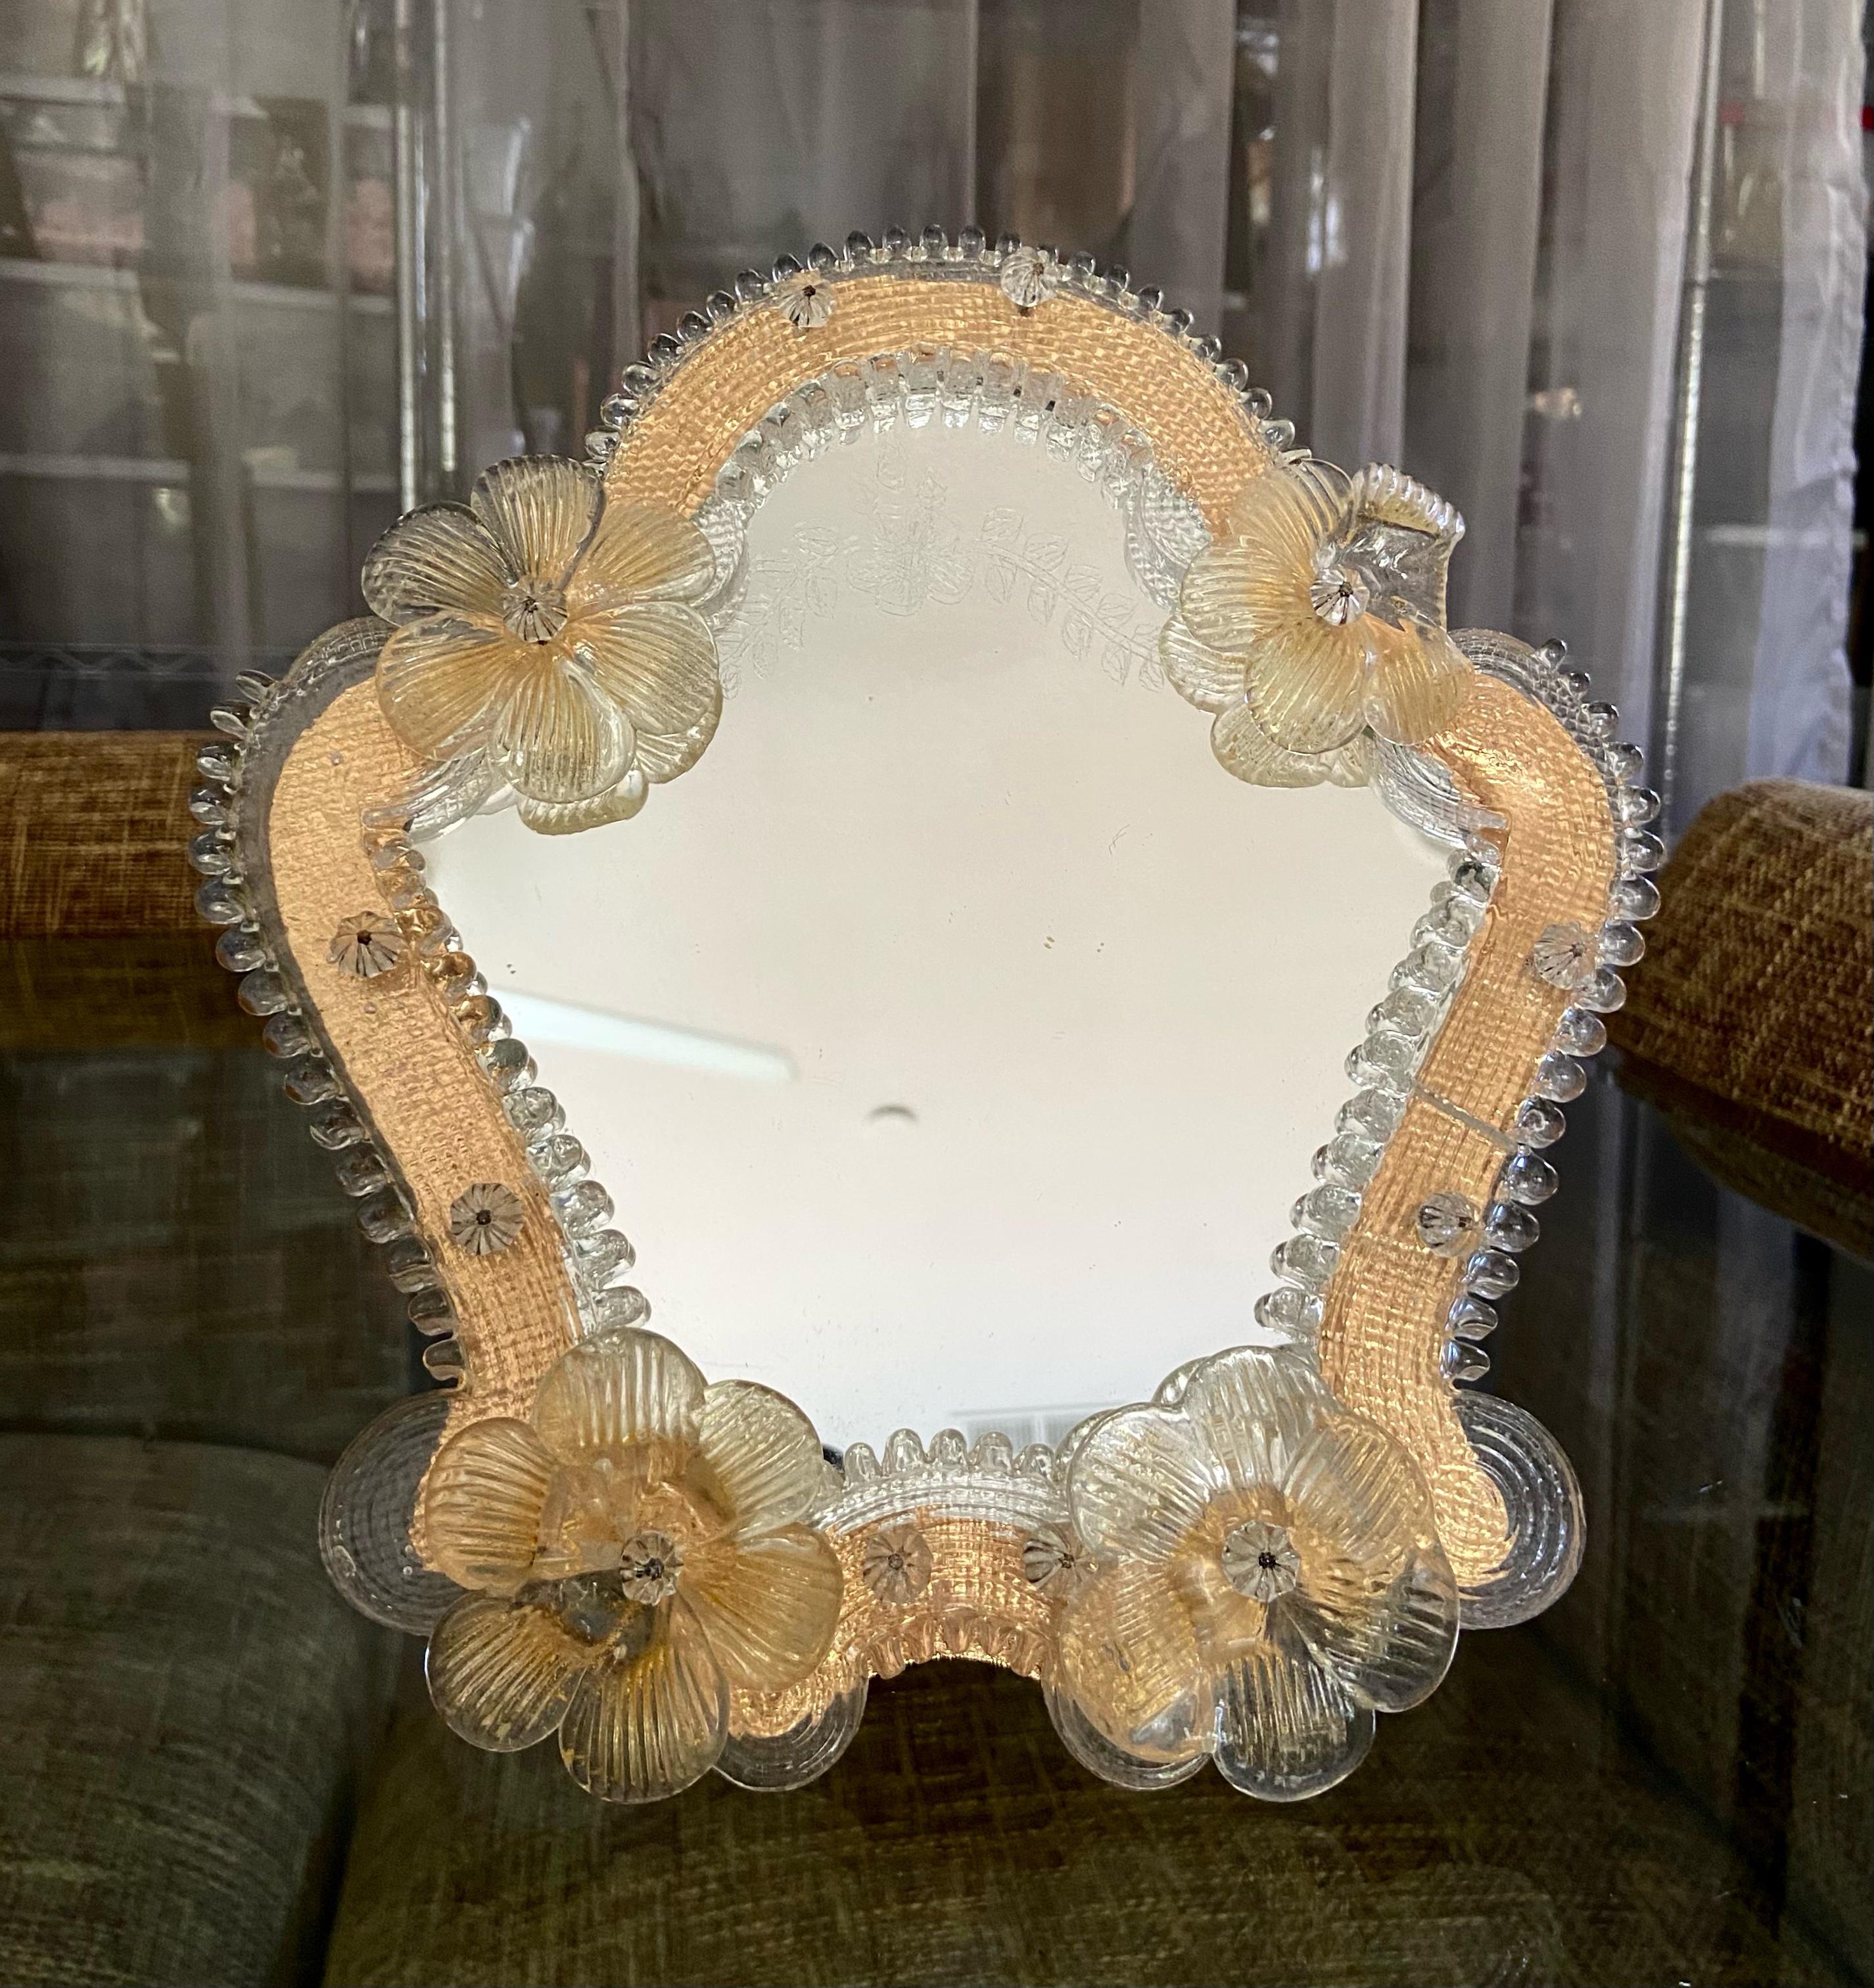 Miroir de table de Murano à échelle réduite avec des fleurs claires et dorées, et des pièces de verre de couleur ambre clair entourant le miroir. Le verre miroir présente des gravures décoratives. Le pied et le support sont en bois. 
  